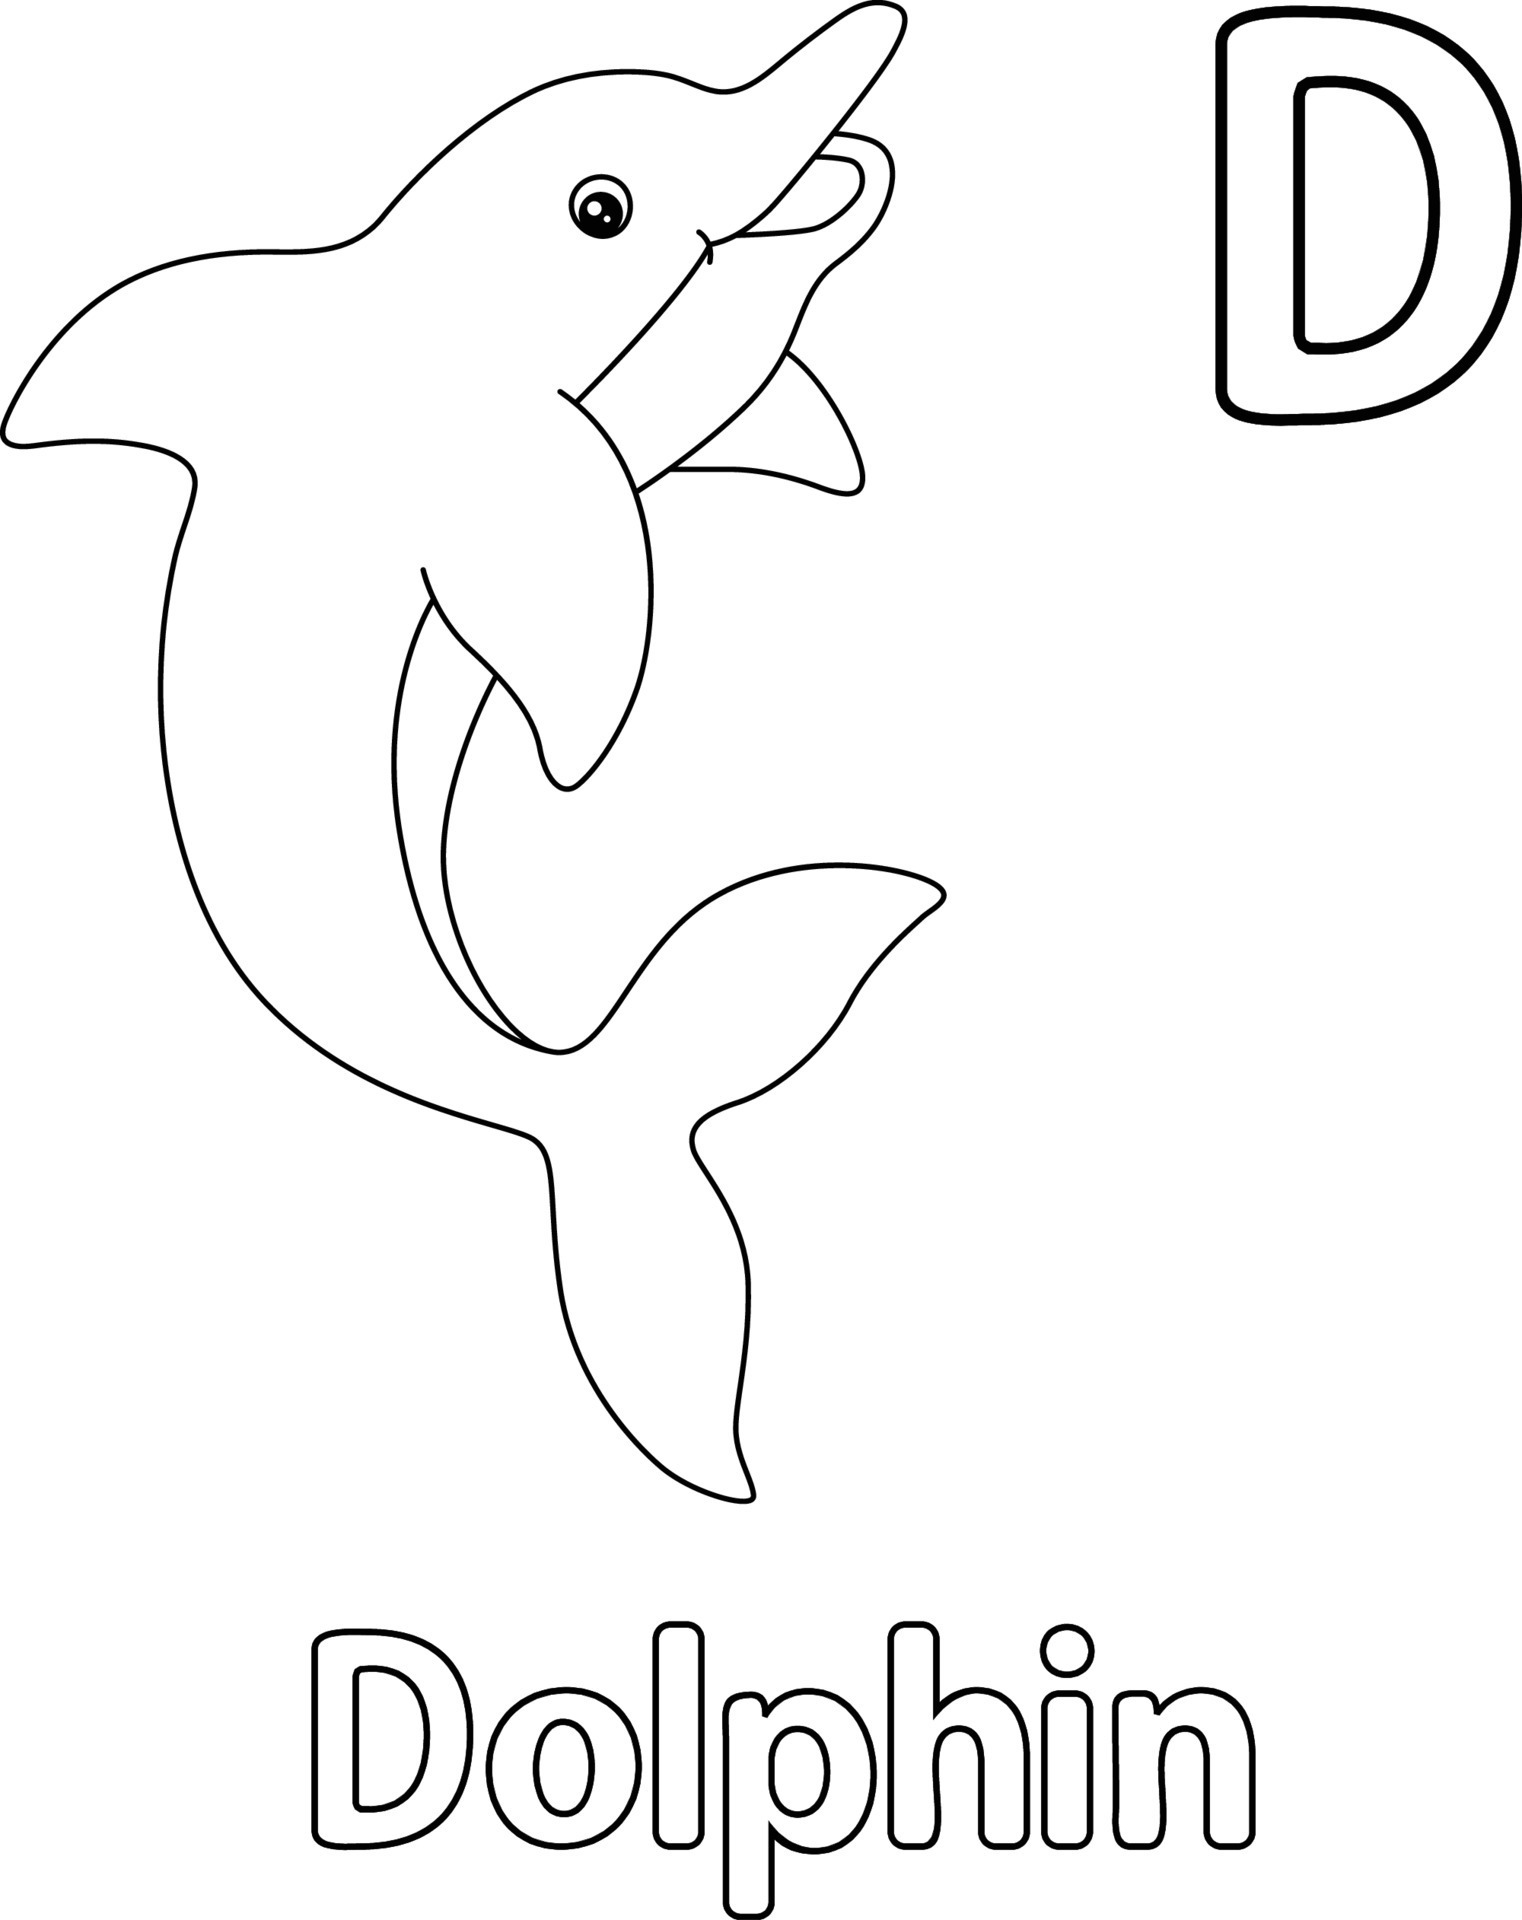 cdn./do/lp/dolphin-coloring-book-d.